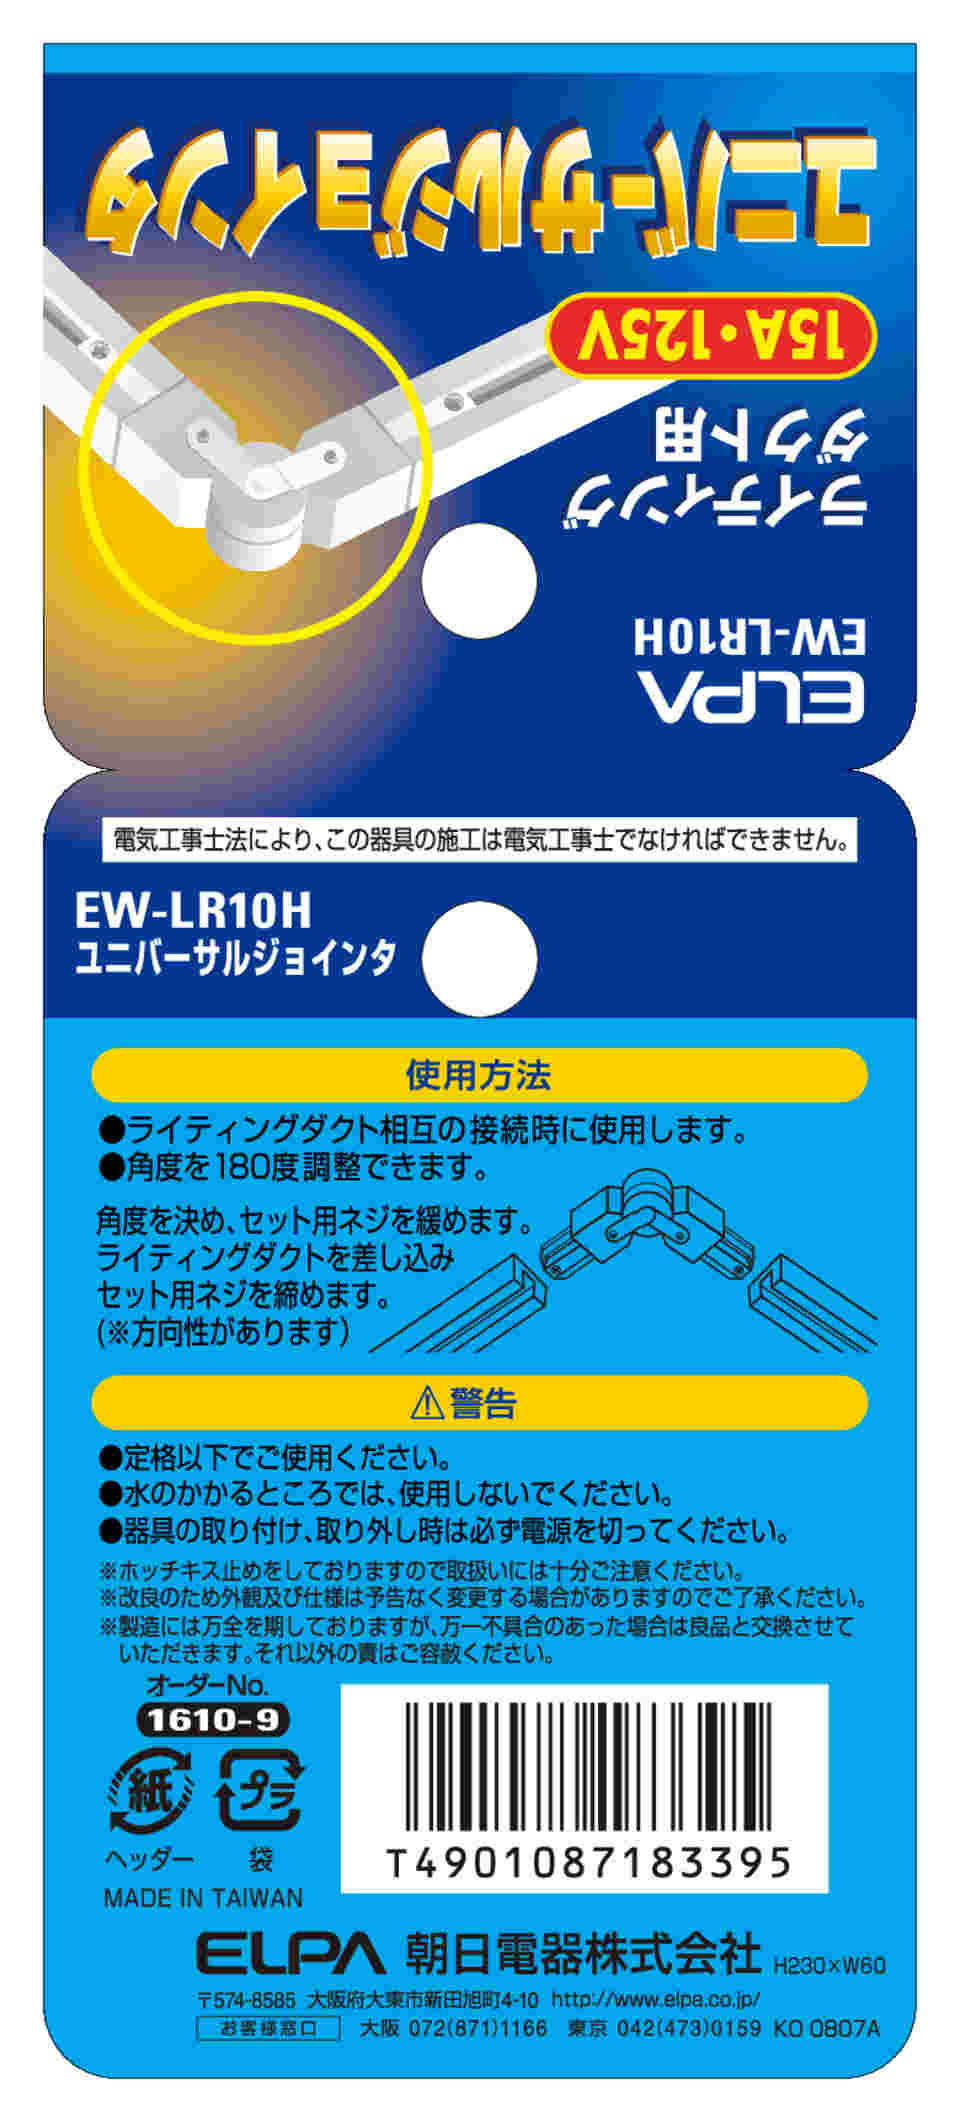 62-8564-88 ユニバーサルジョインタ EW-LR10H 【AXEL】 アズワン